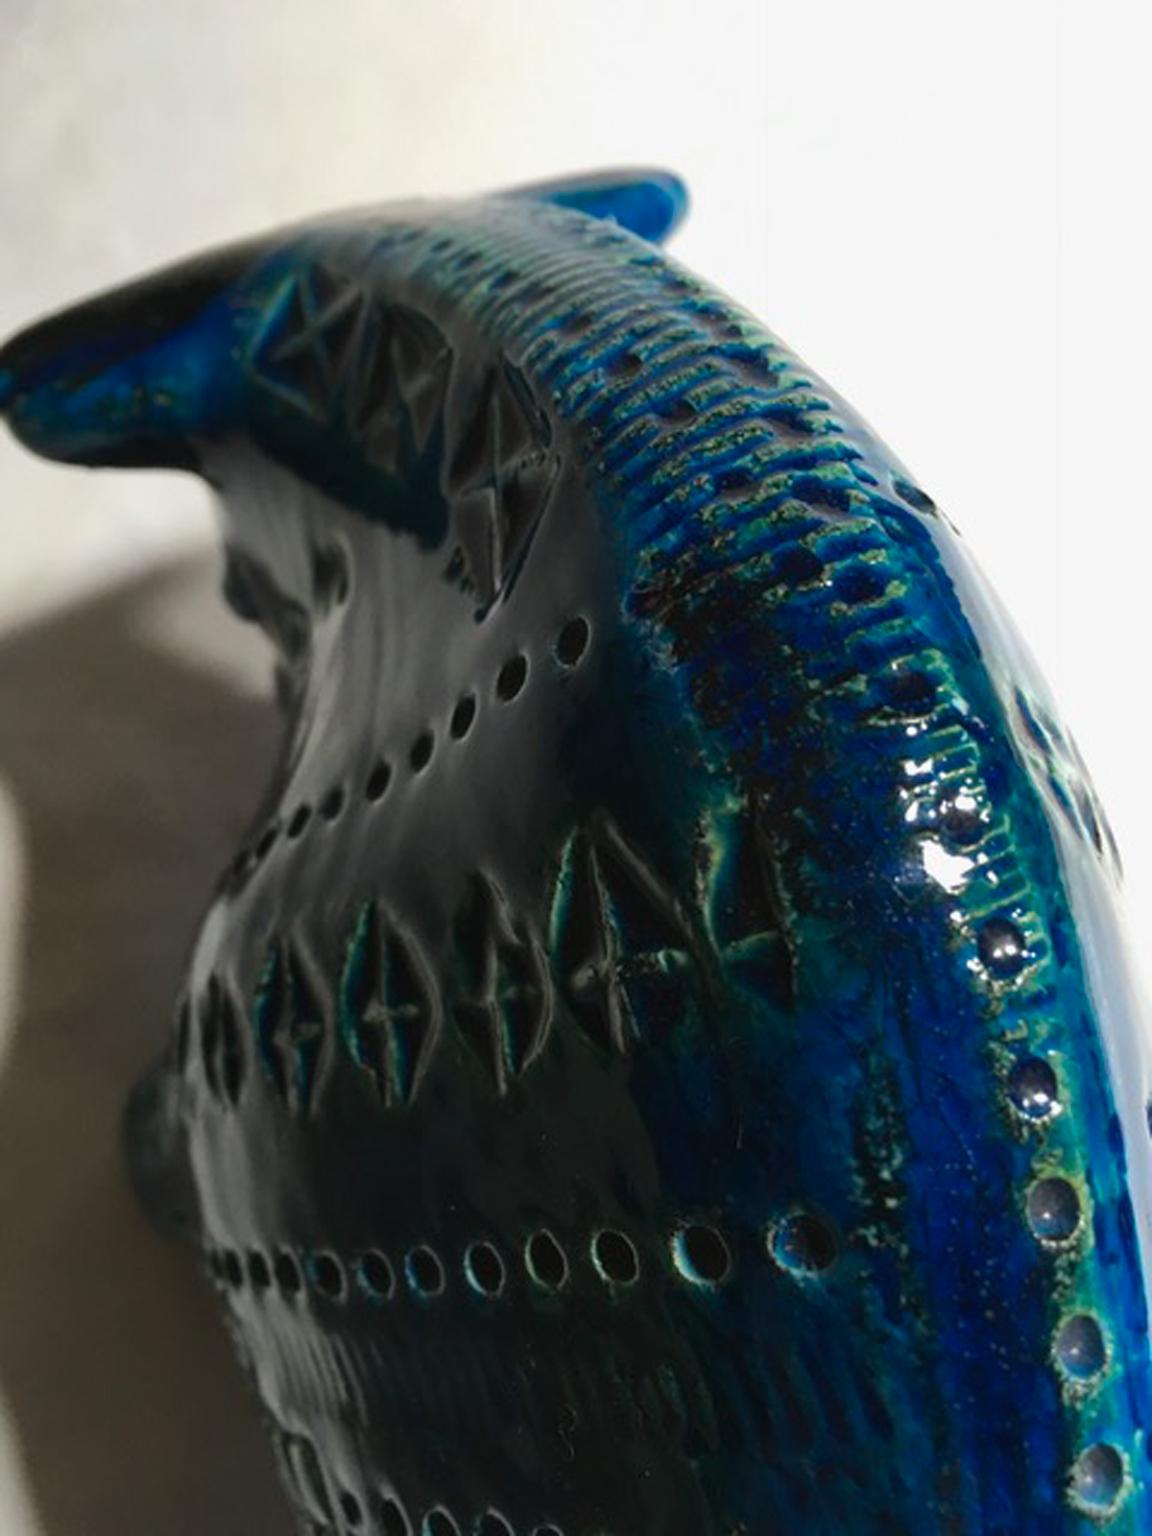 1980 Post-Modern Italian Design Bull in Turquoise Enameled Ceramic For Sale 2